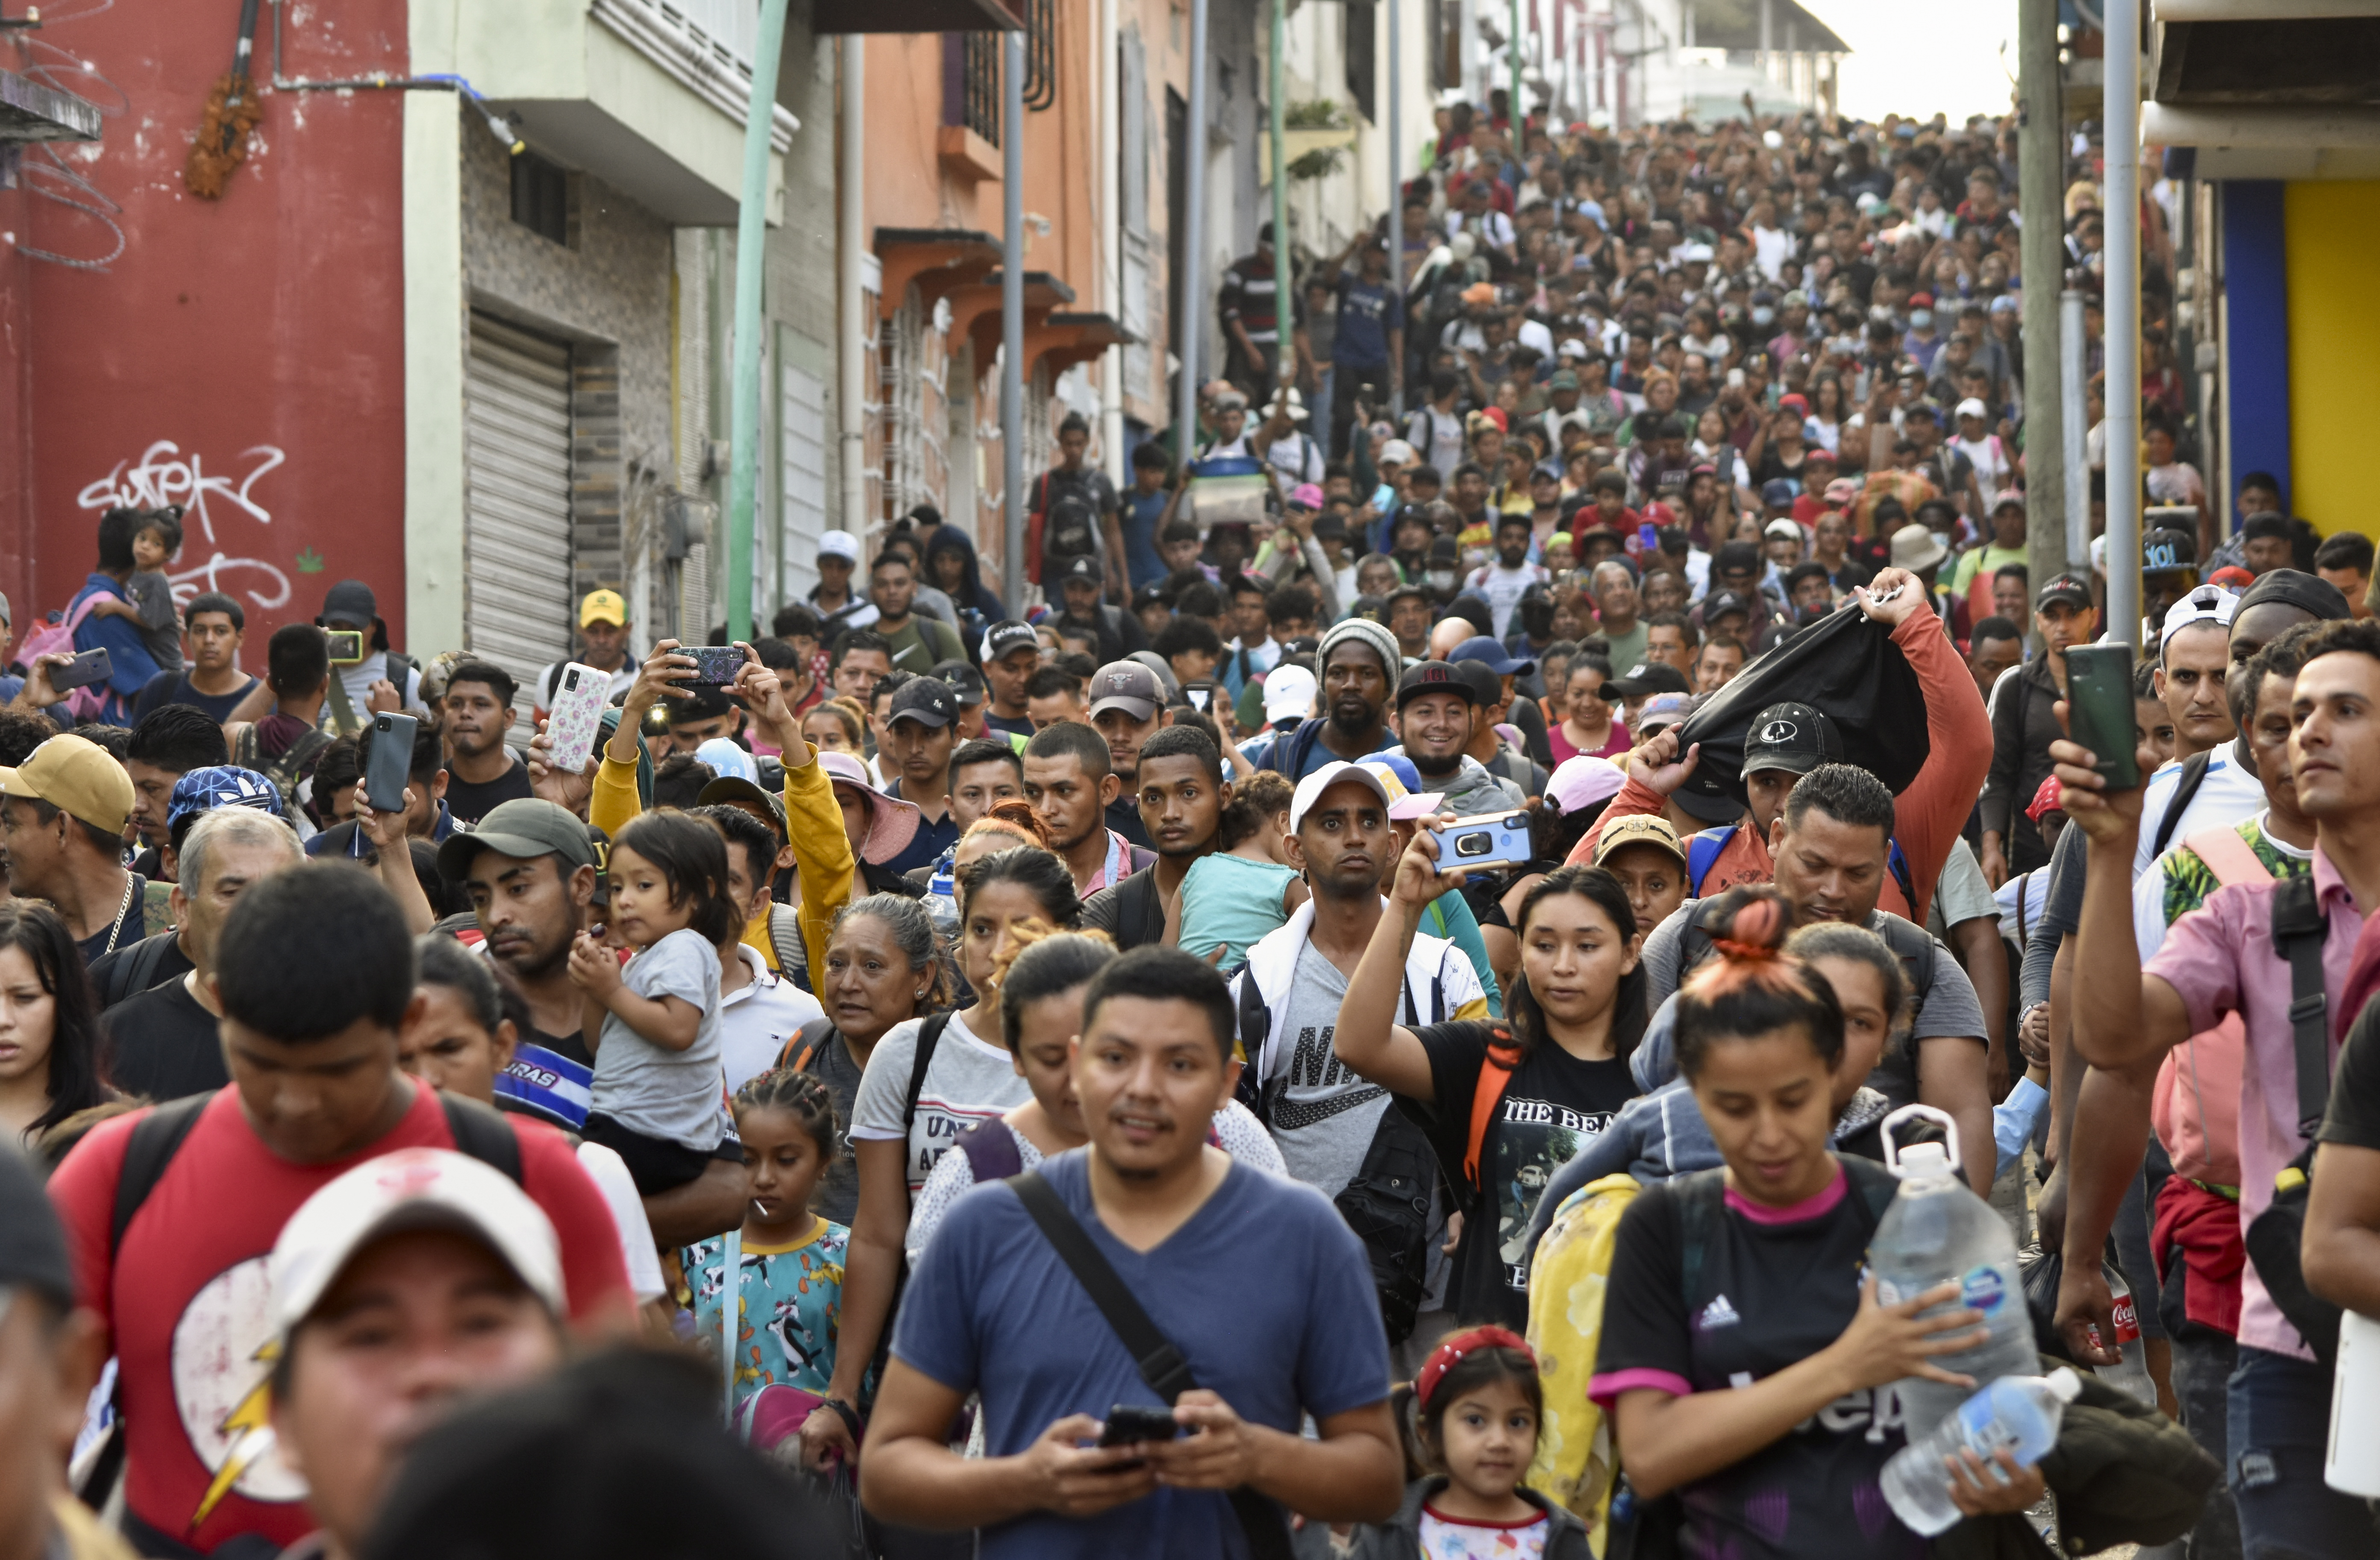 멕시코 이민자들, 처우 개선 촉구 1100㎞ 도보 행진